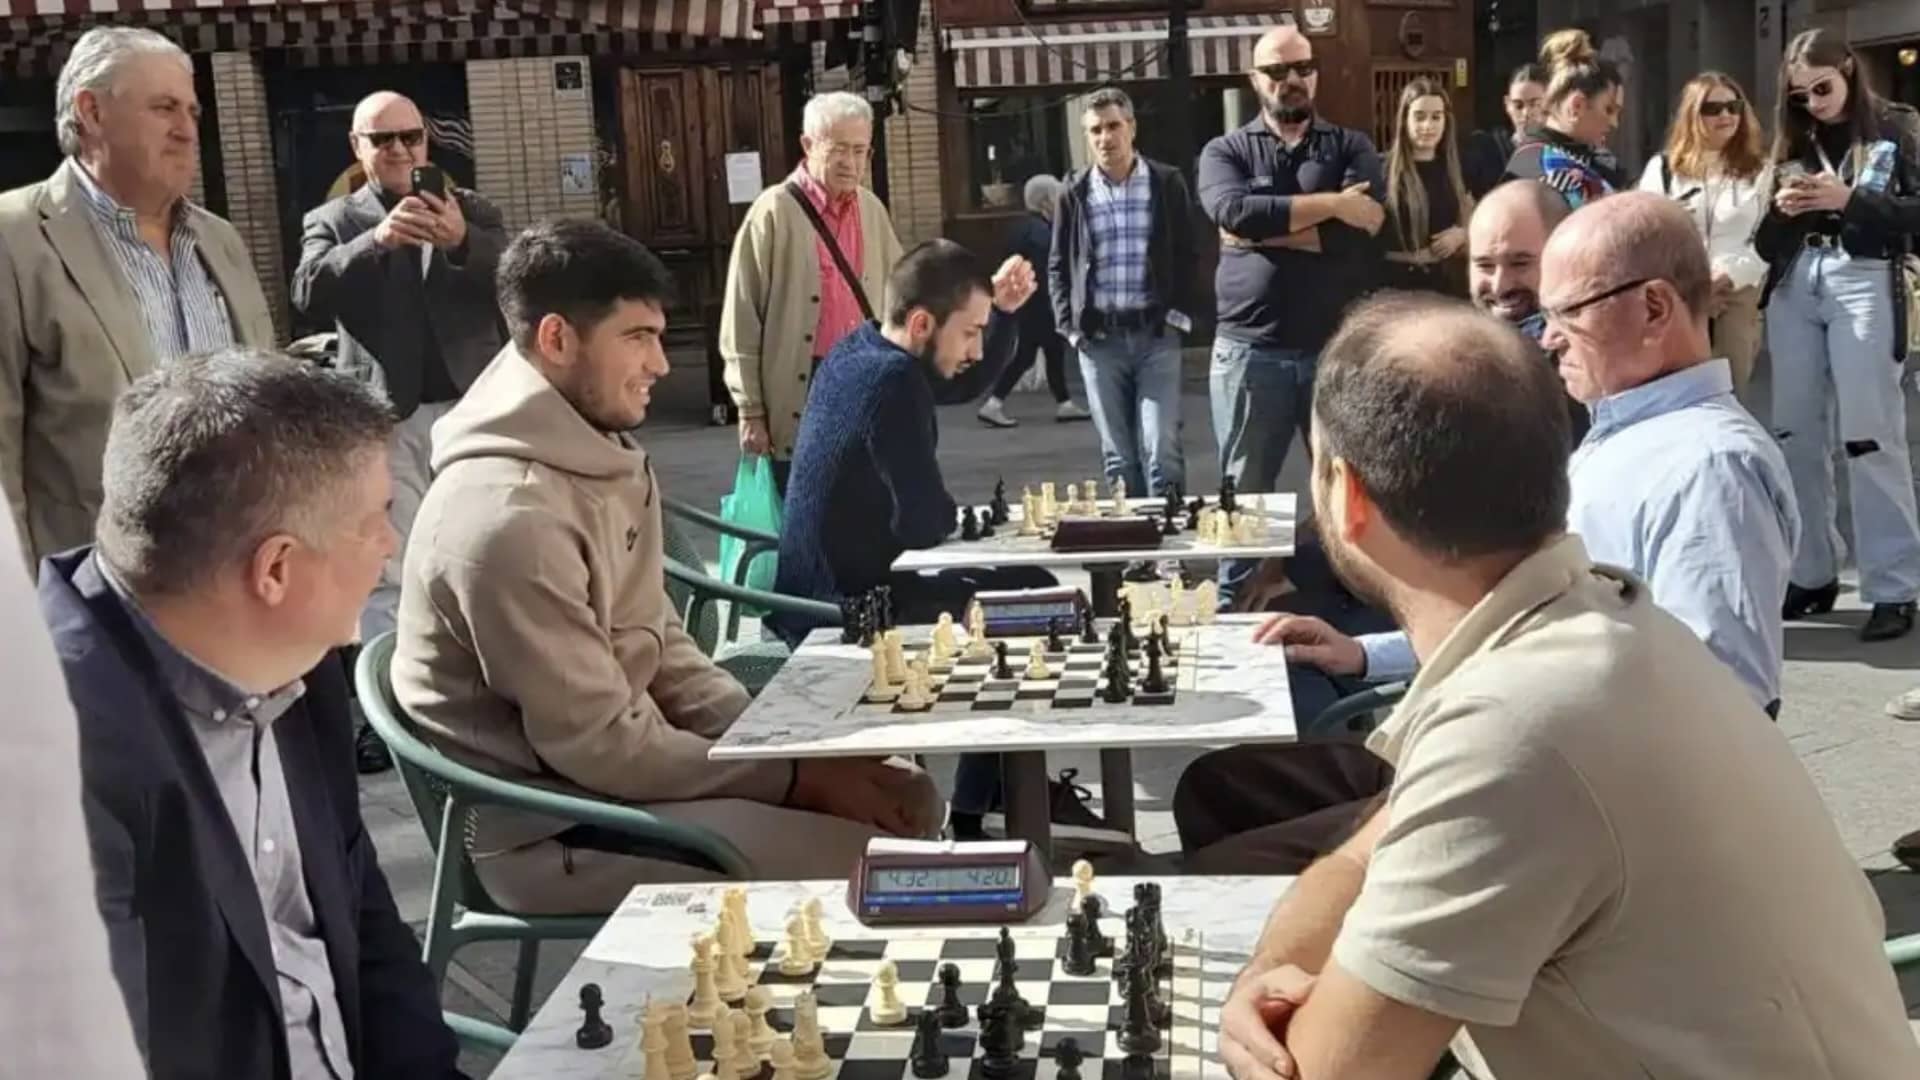 Carlos Alcaraz playing chess in Murcia's Plaza de las Flores.